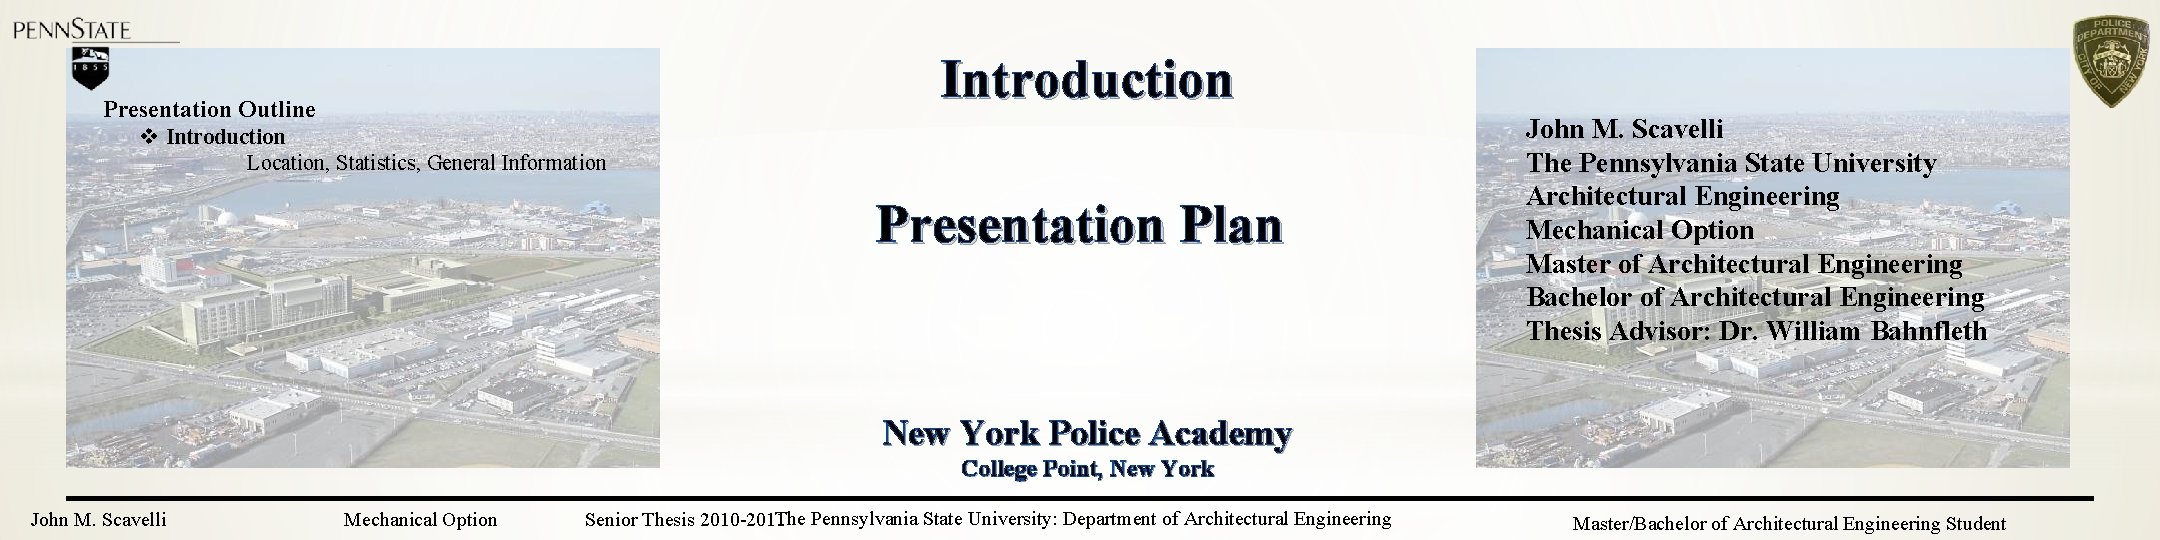 Introduction Presentation Outline v Introduction Location, Statistics, General Information Presentation Plan John M. Scavelli